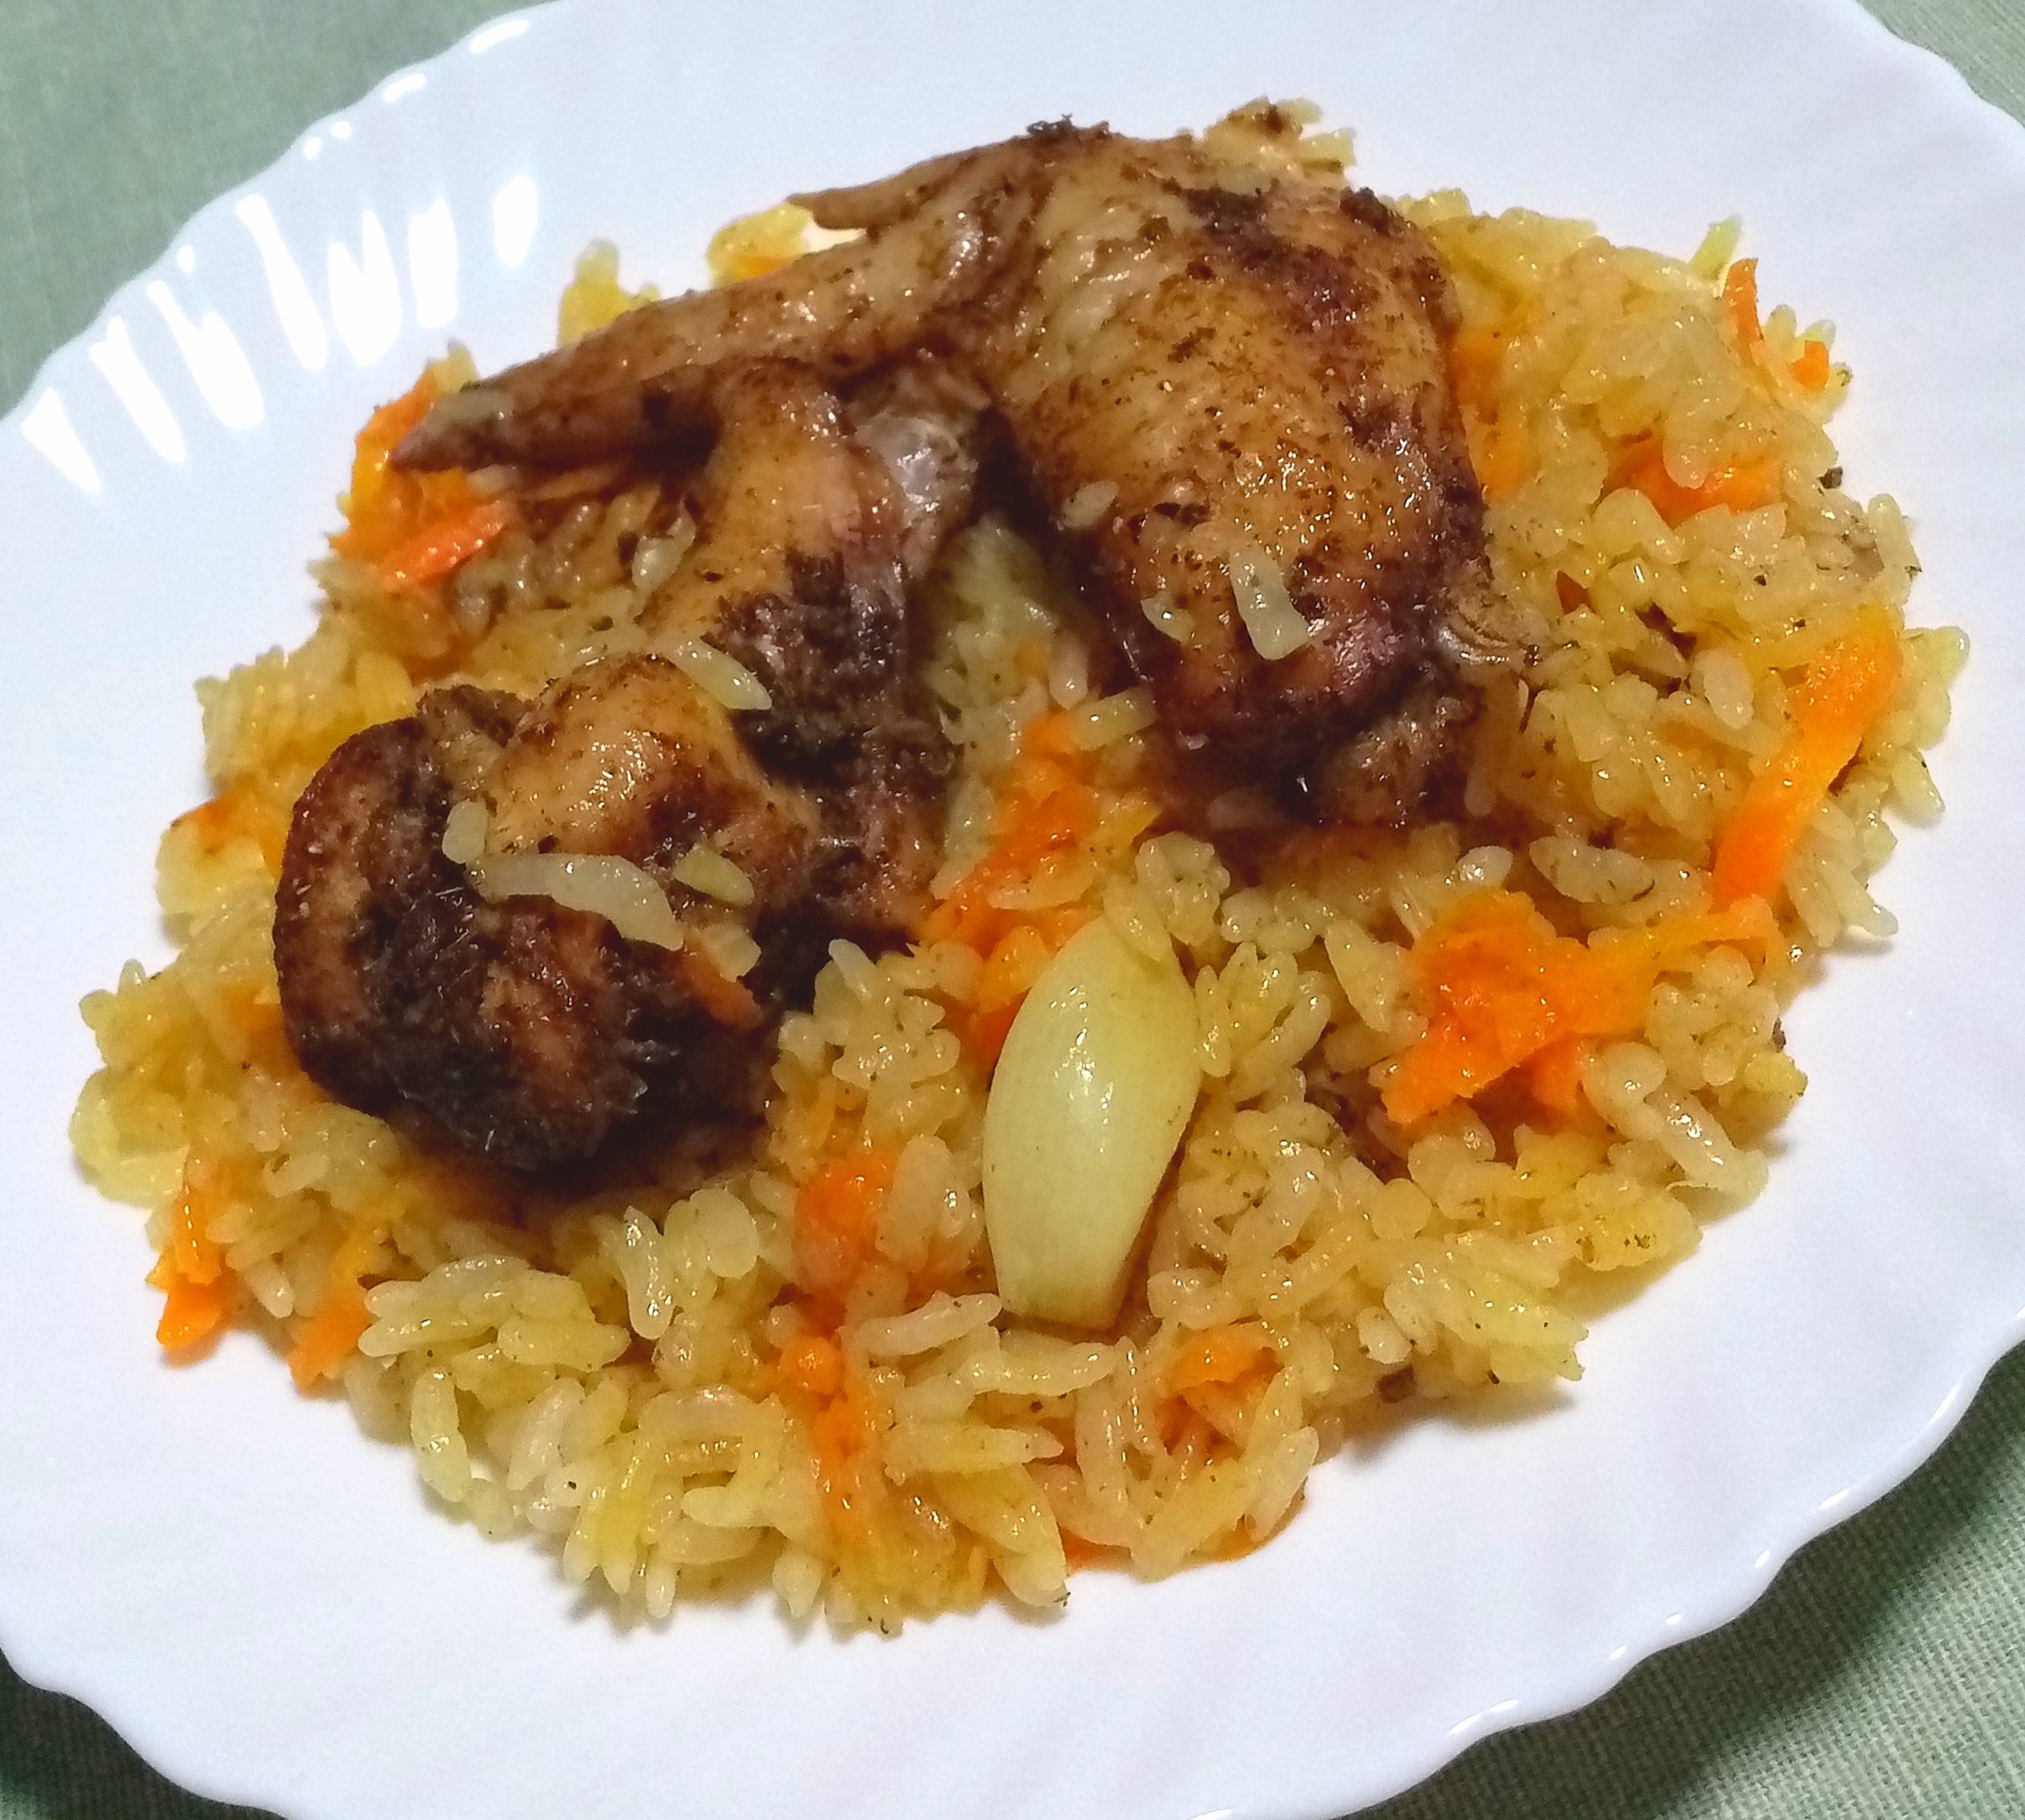 Куриные крылышки со вкусом шашлыка с рисом в духовке 